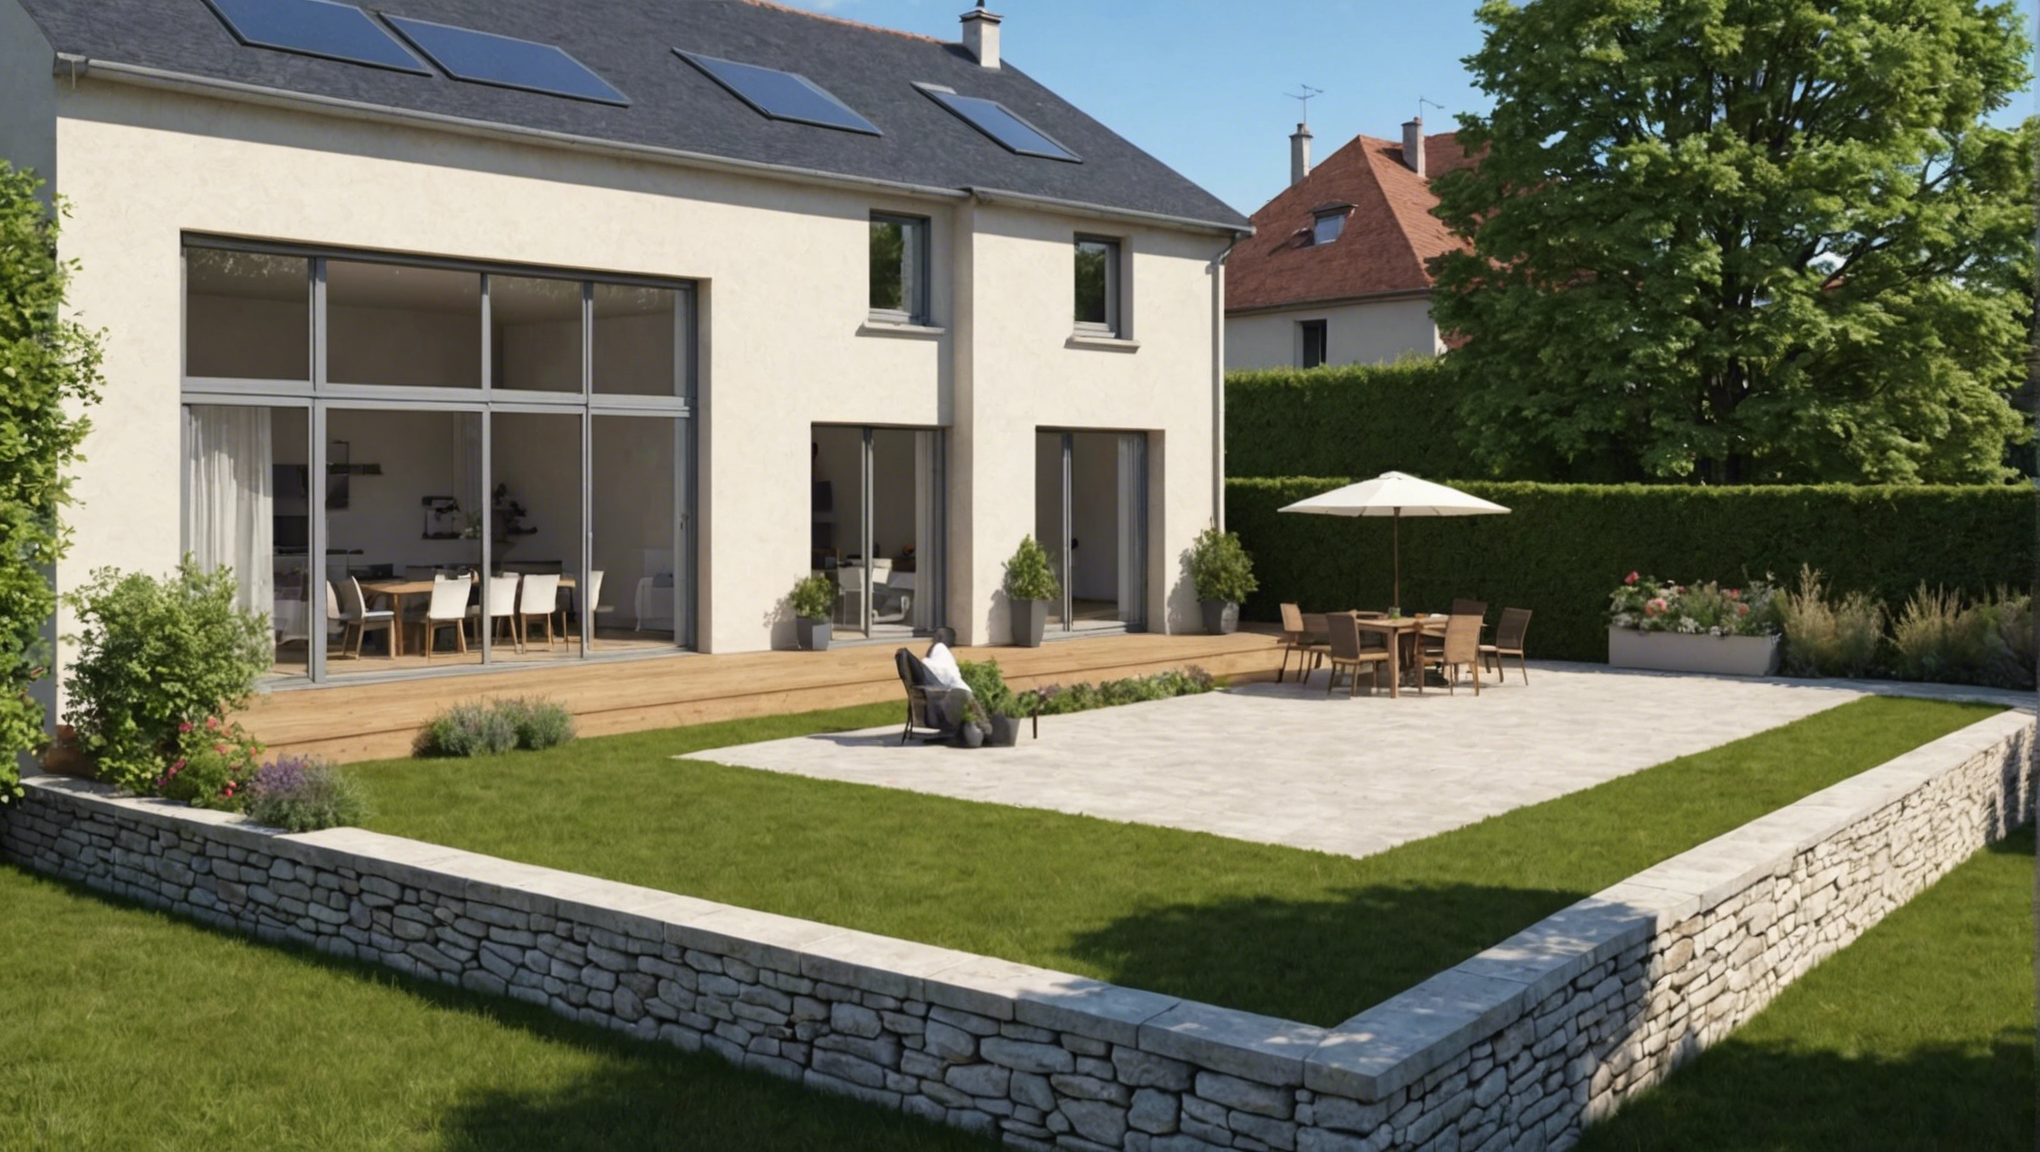 service de terrassement pour votre maison à saint-étienne. des experts en travaux de terrassement pour une construction solide et durable.